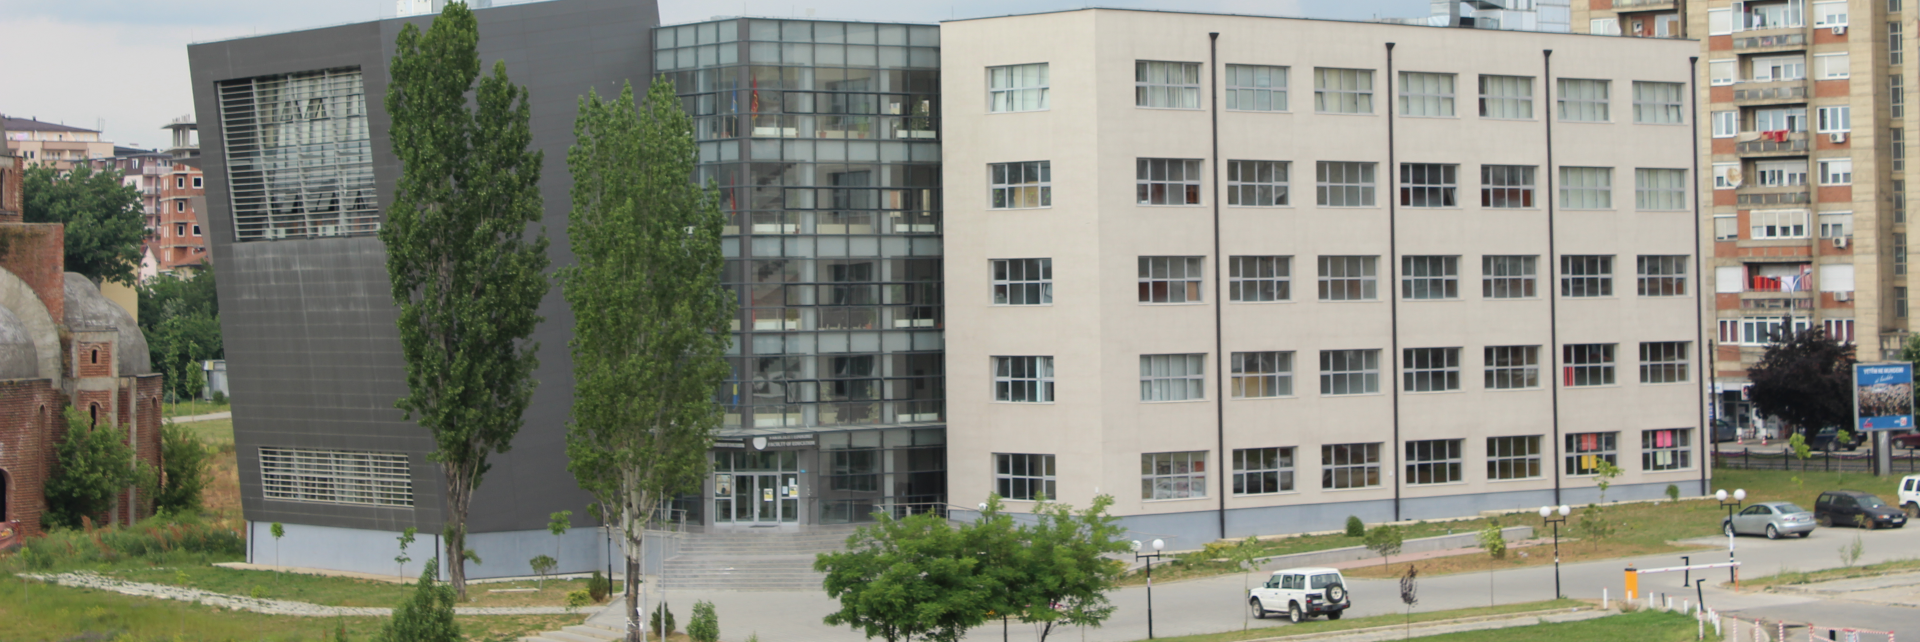 Universiteti Prishtines